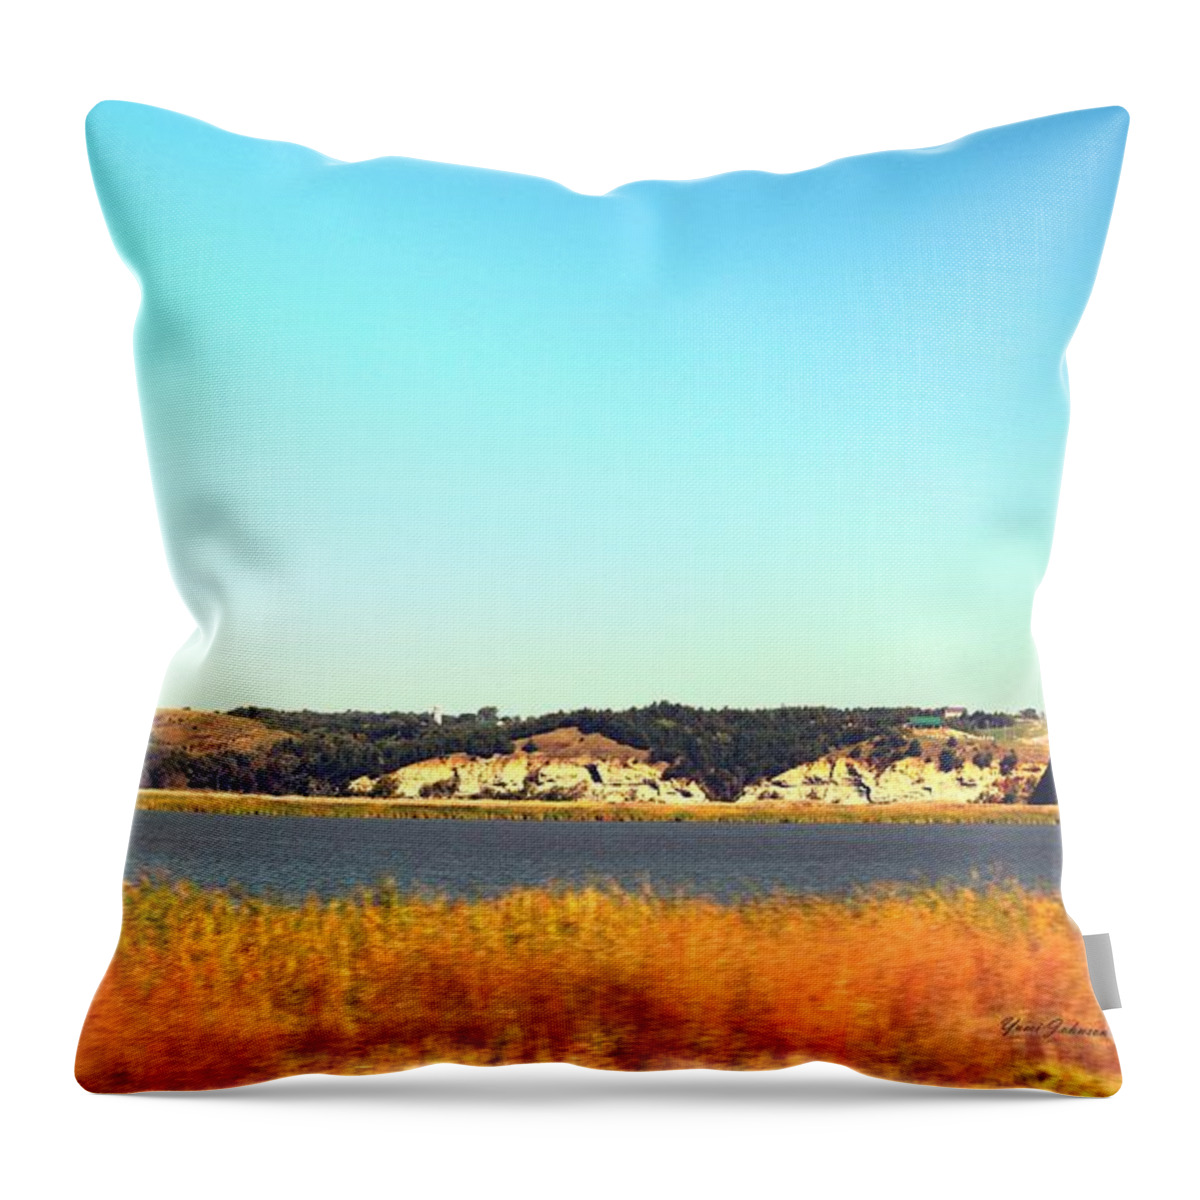 Niobrara Throw Pillow featuring the photograph Niobrara River by Yumi Johnson